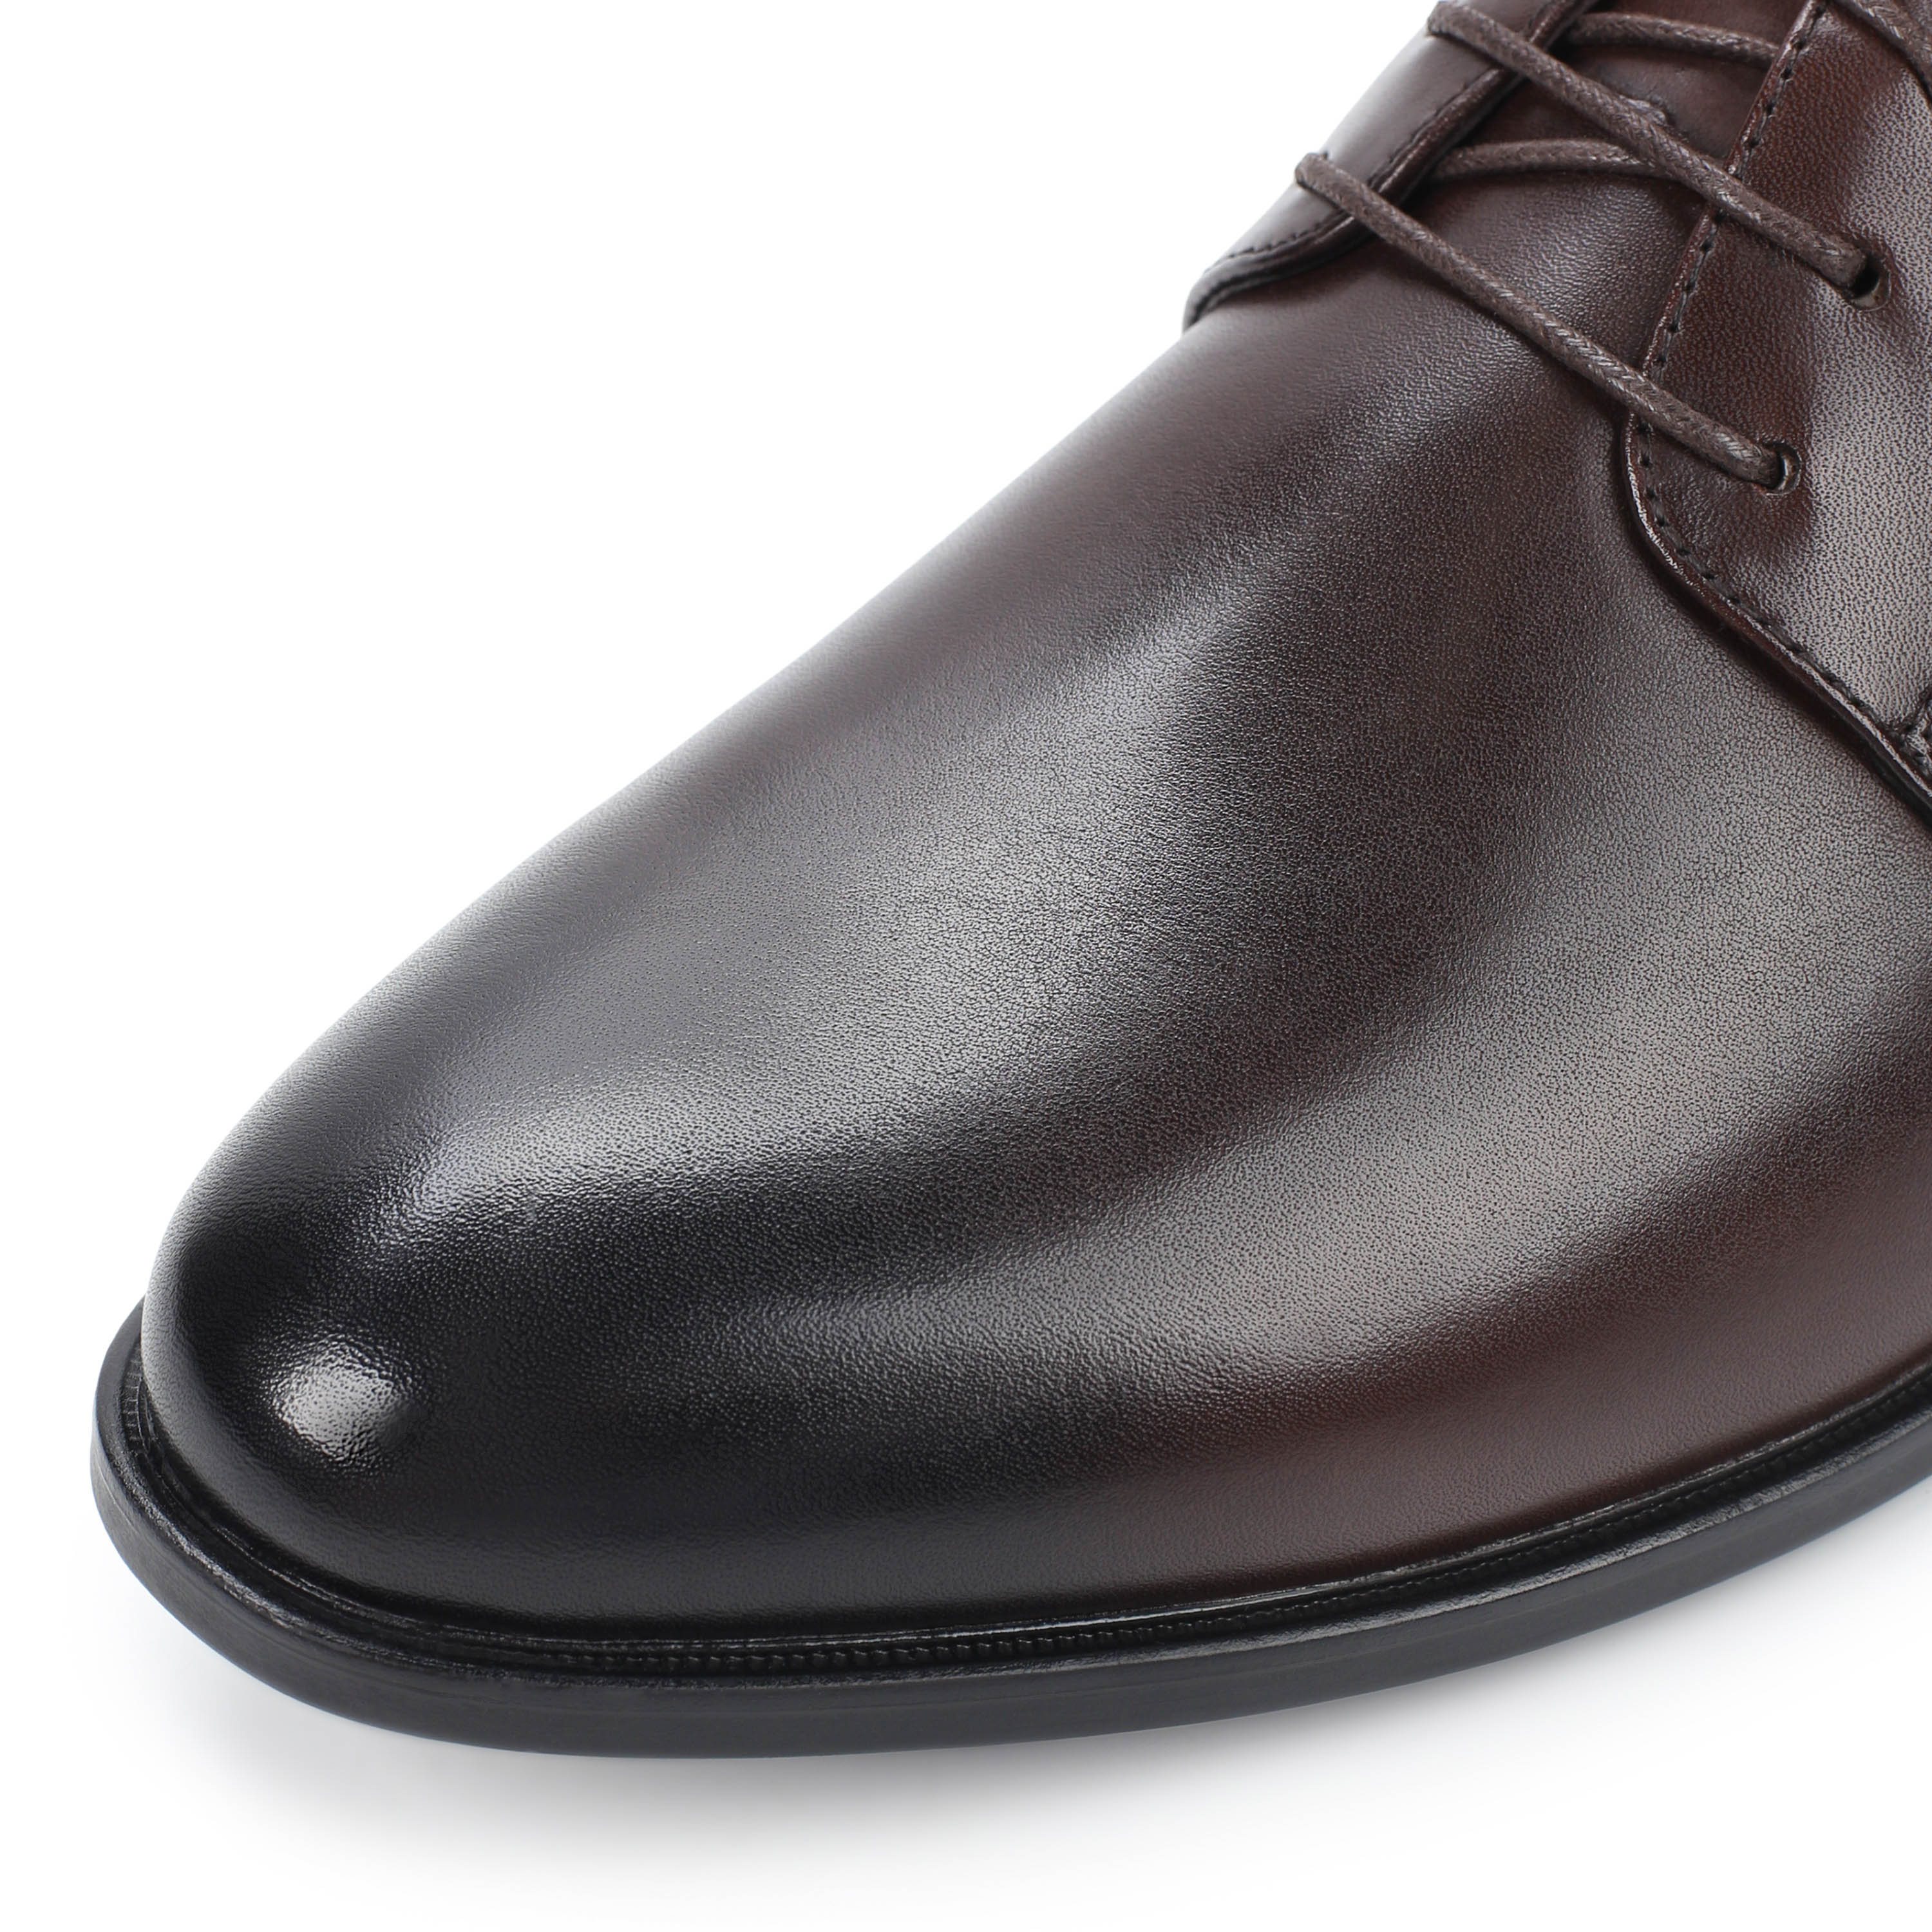 Туфли Thomas Munz 058-407A-1109 058-407A-1109, цвет коричневый, размер 44 полуботинки - фото 6